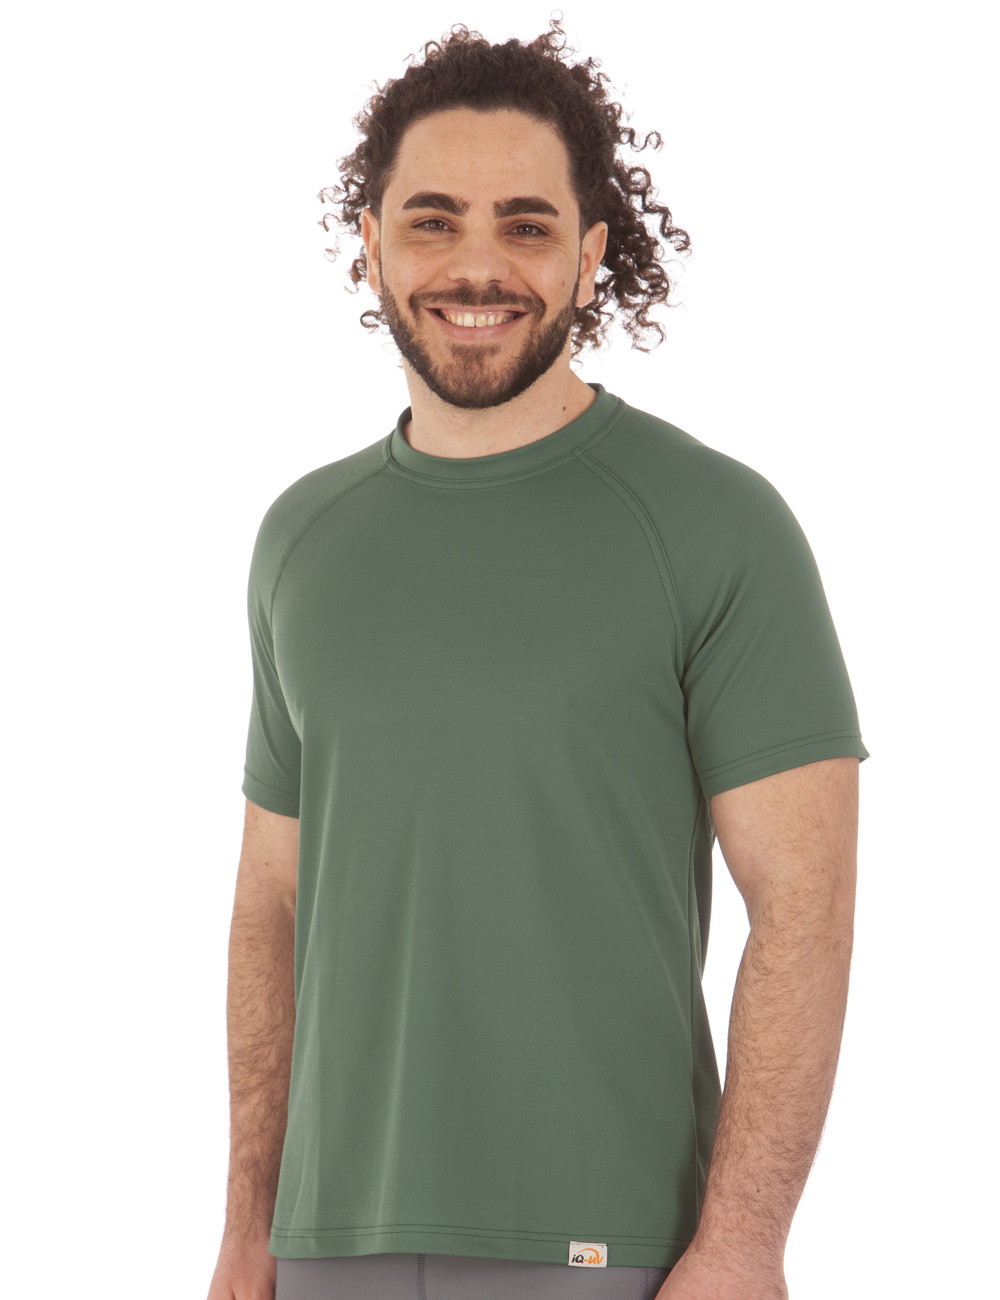 UV T-Shirt für Herren Outdoor Rundhals grün angezogen